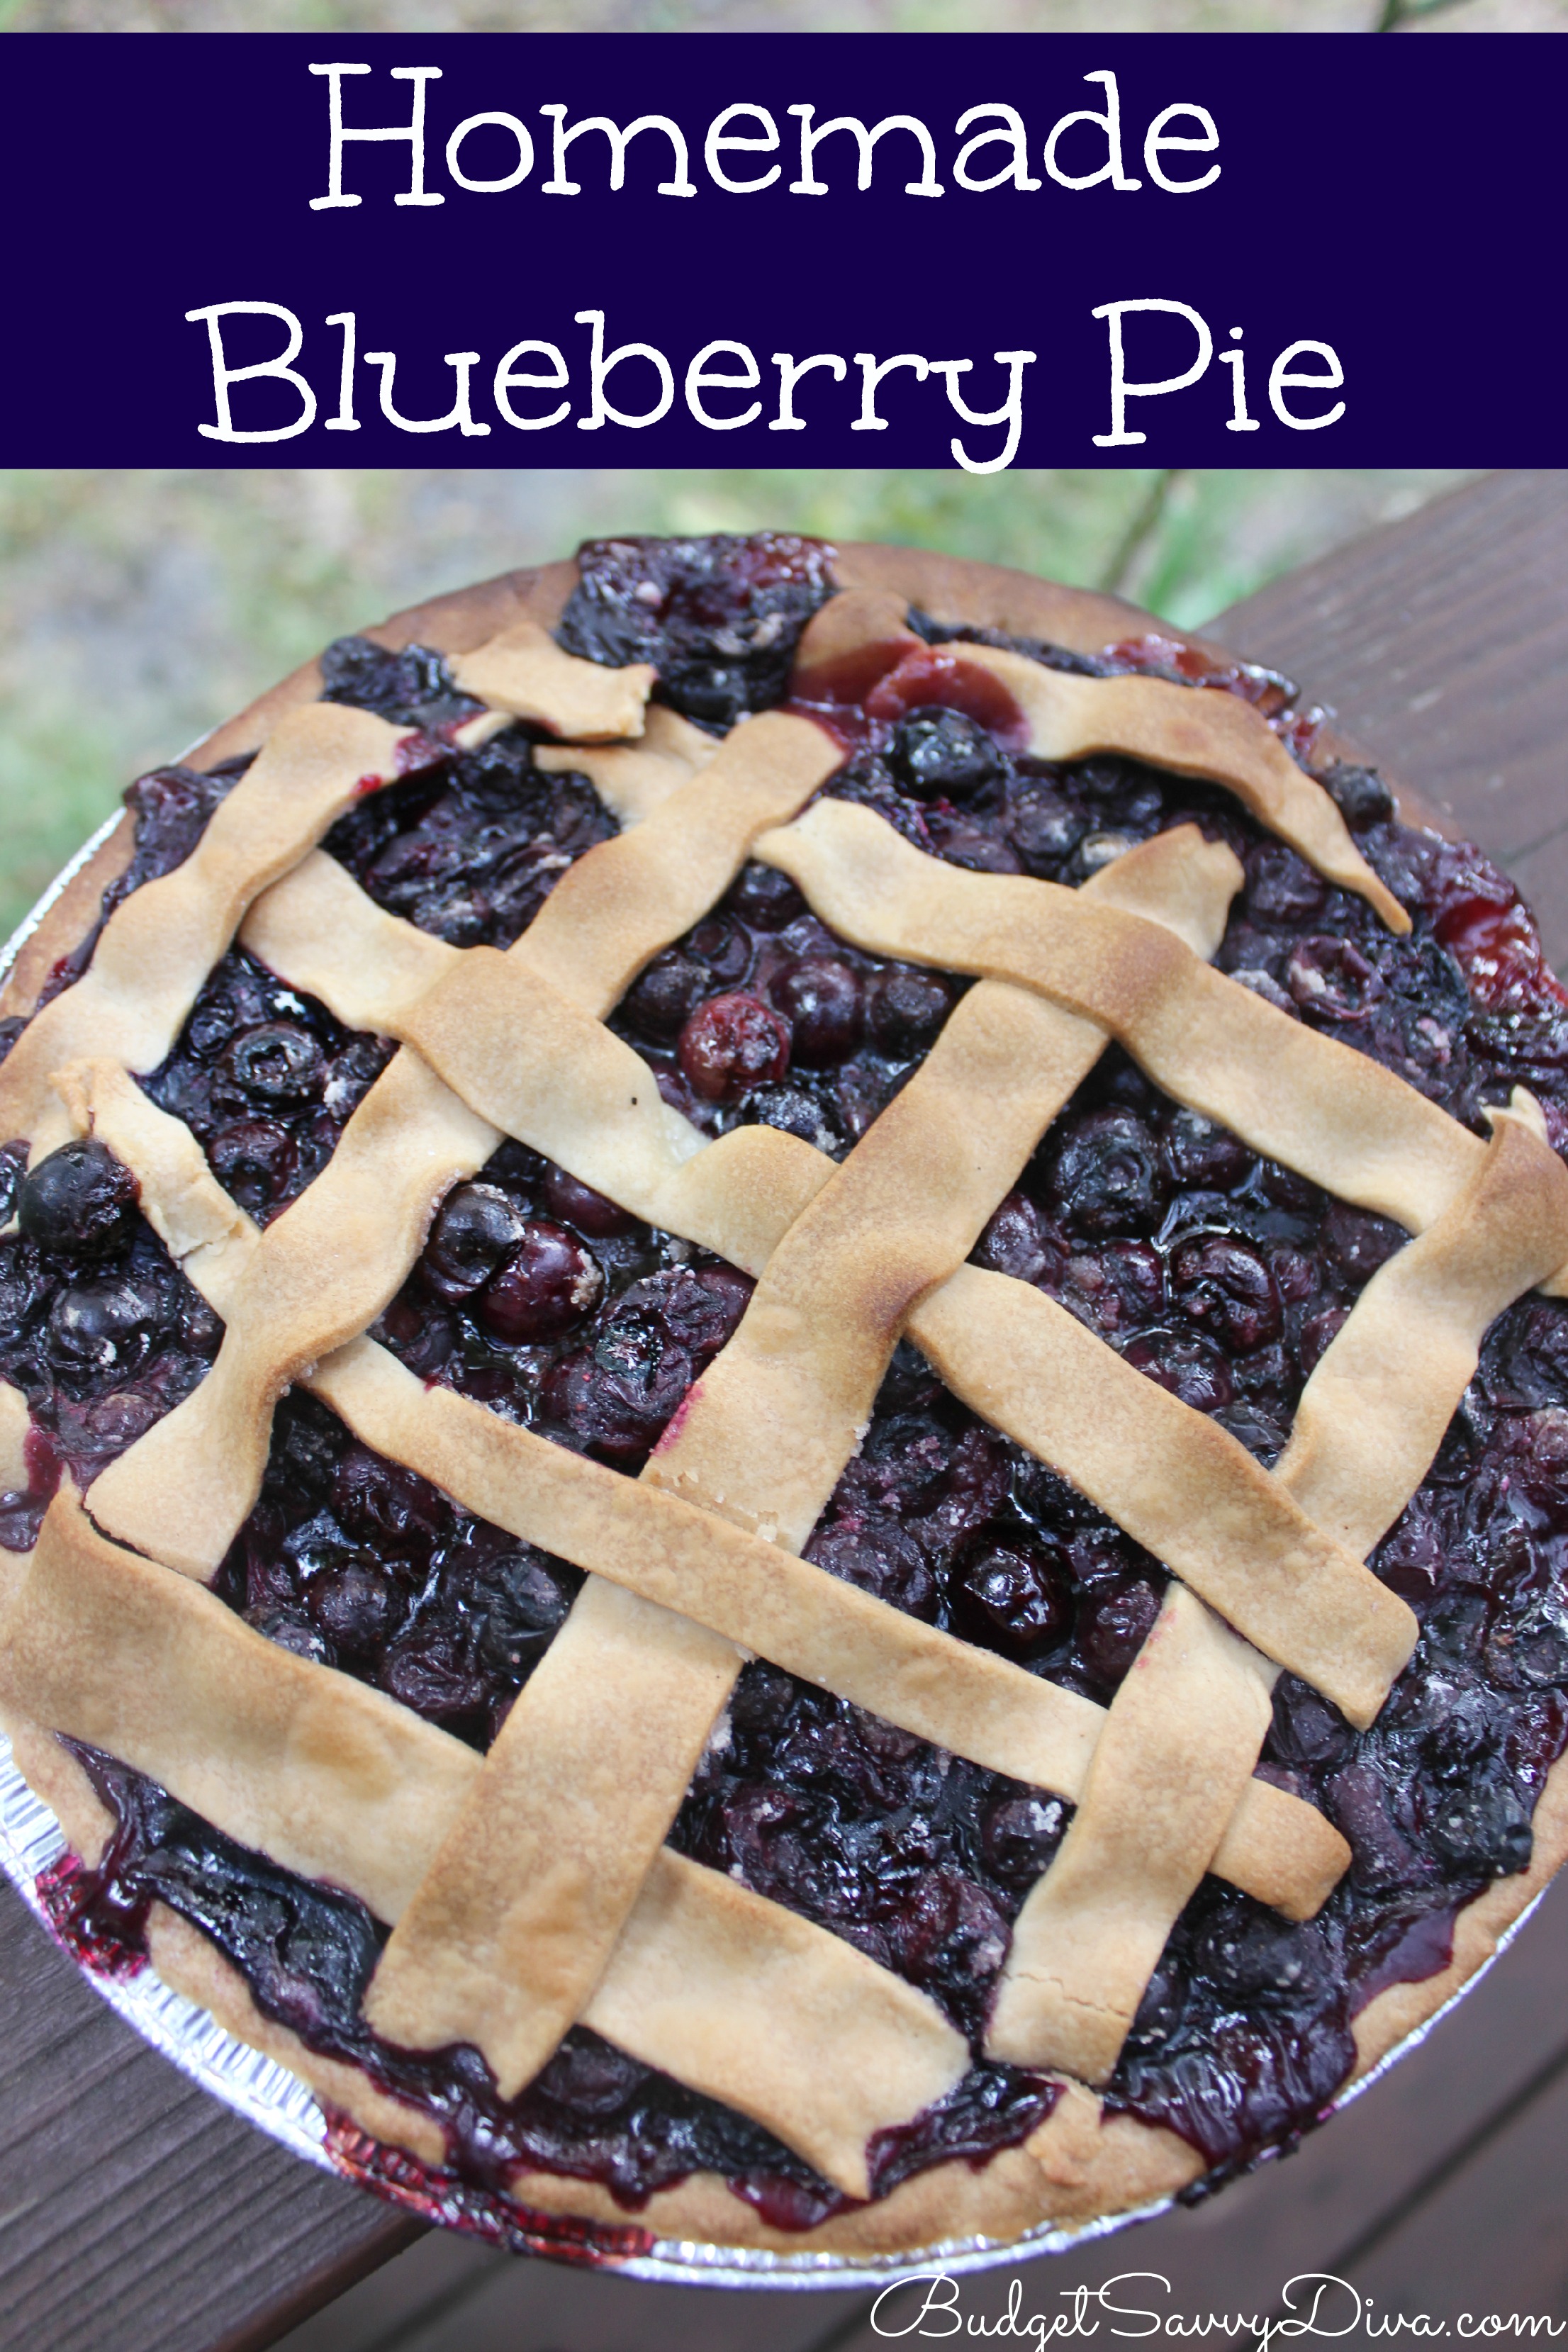 Homemade Blueberry Pie Recipe - Budget Savvy Diva